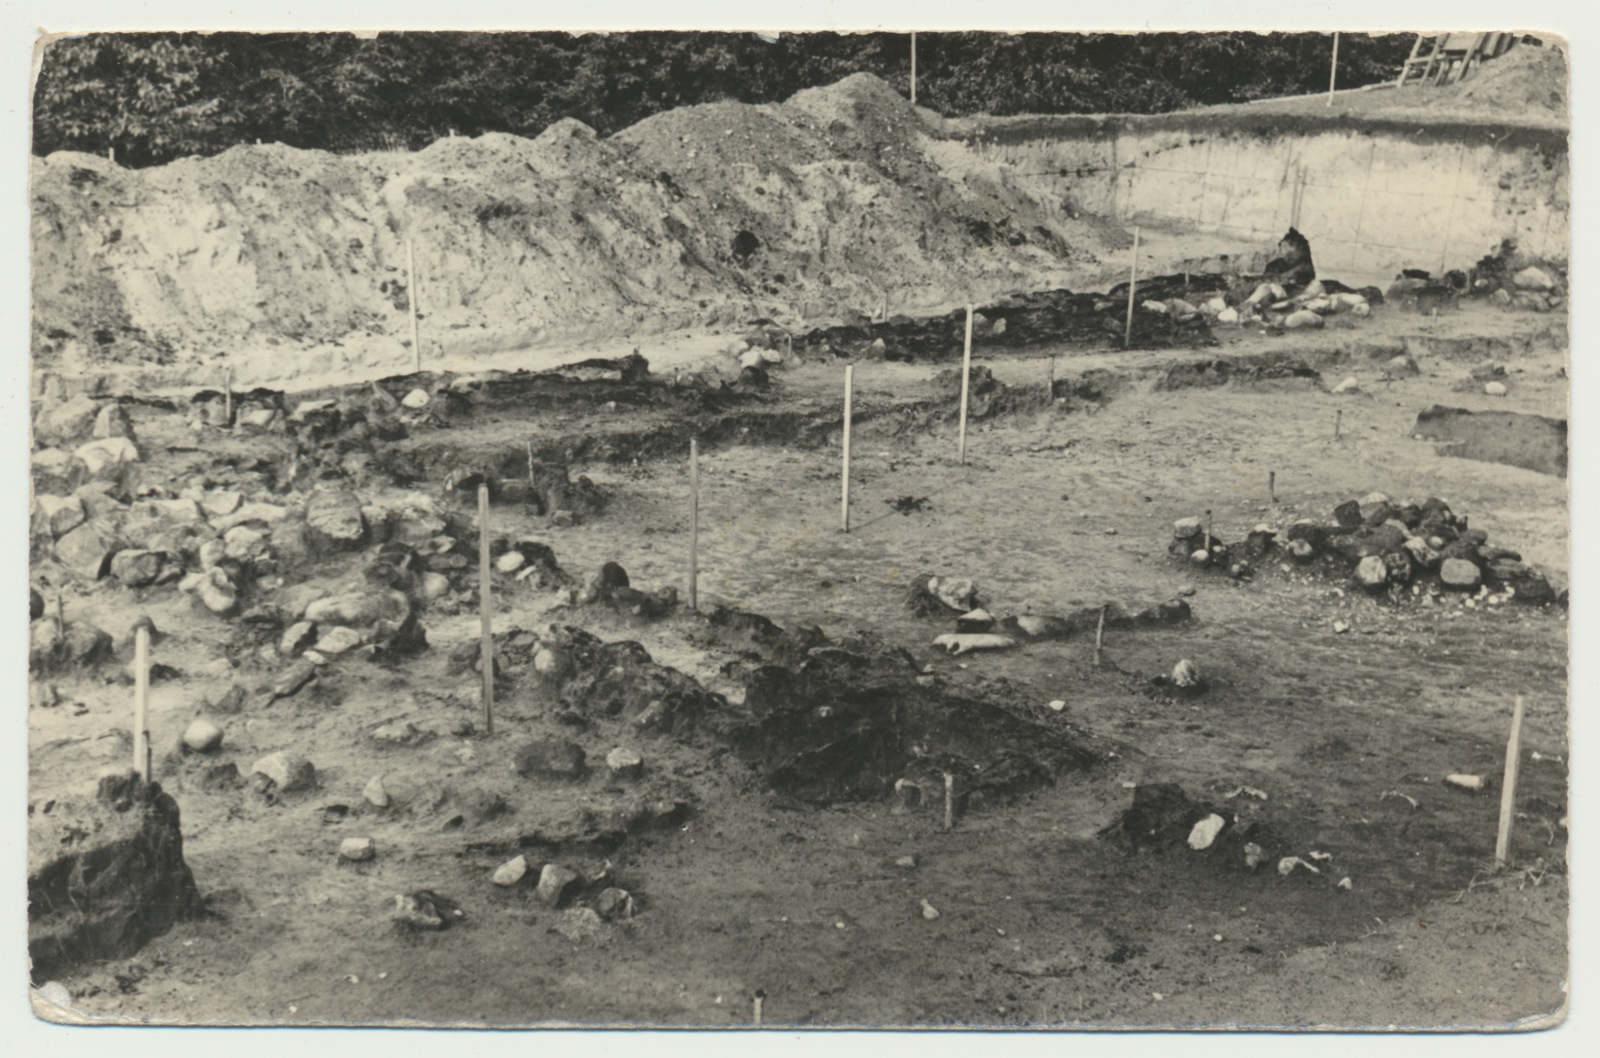 foto, Viljandimaa, Lõhavere linnamägi, arheoloogilised väljakaevamised, kaevand, 1937?